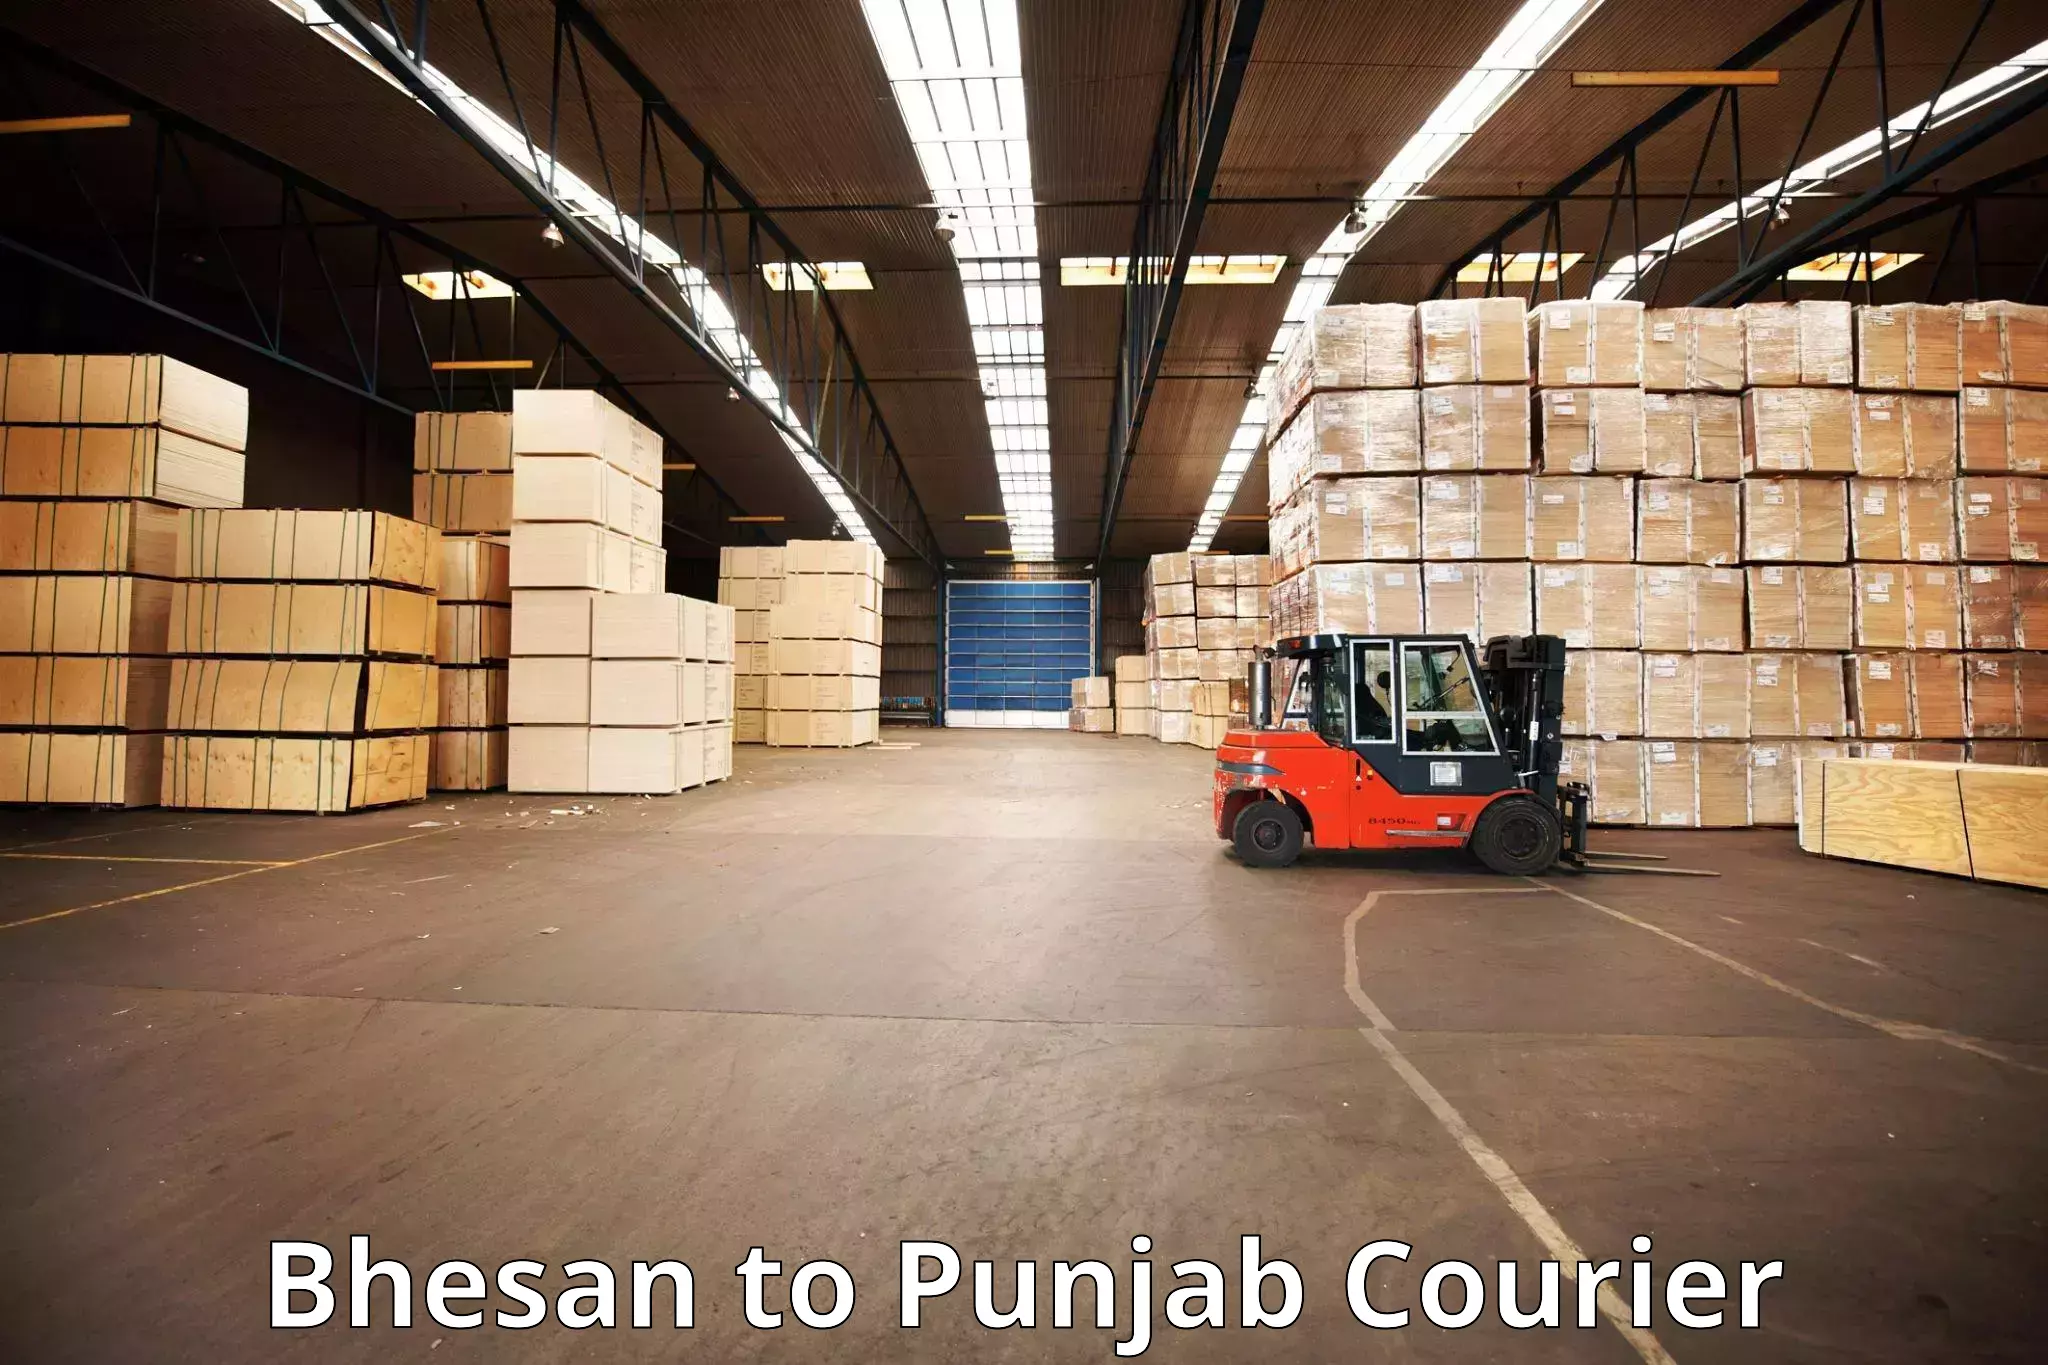 Luggage transport guidelines Bhesan to Punjab